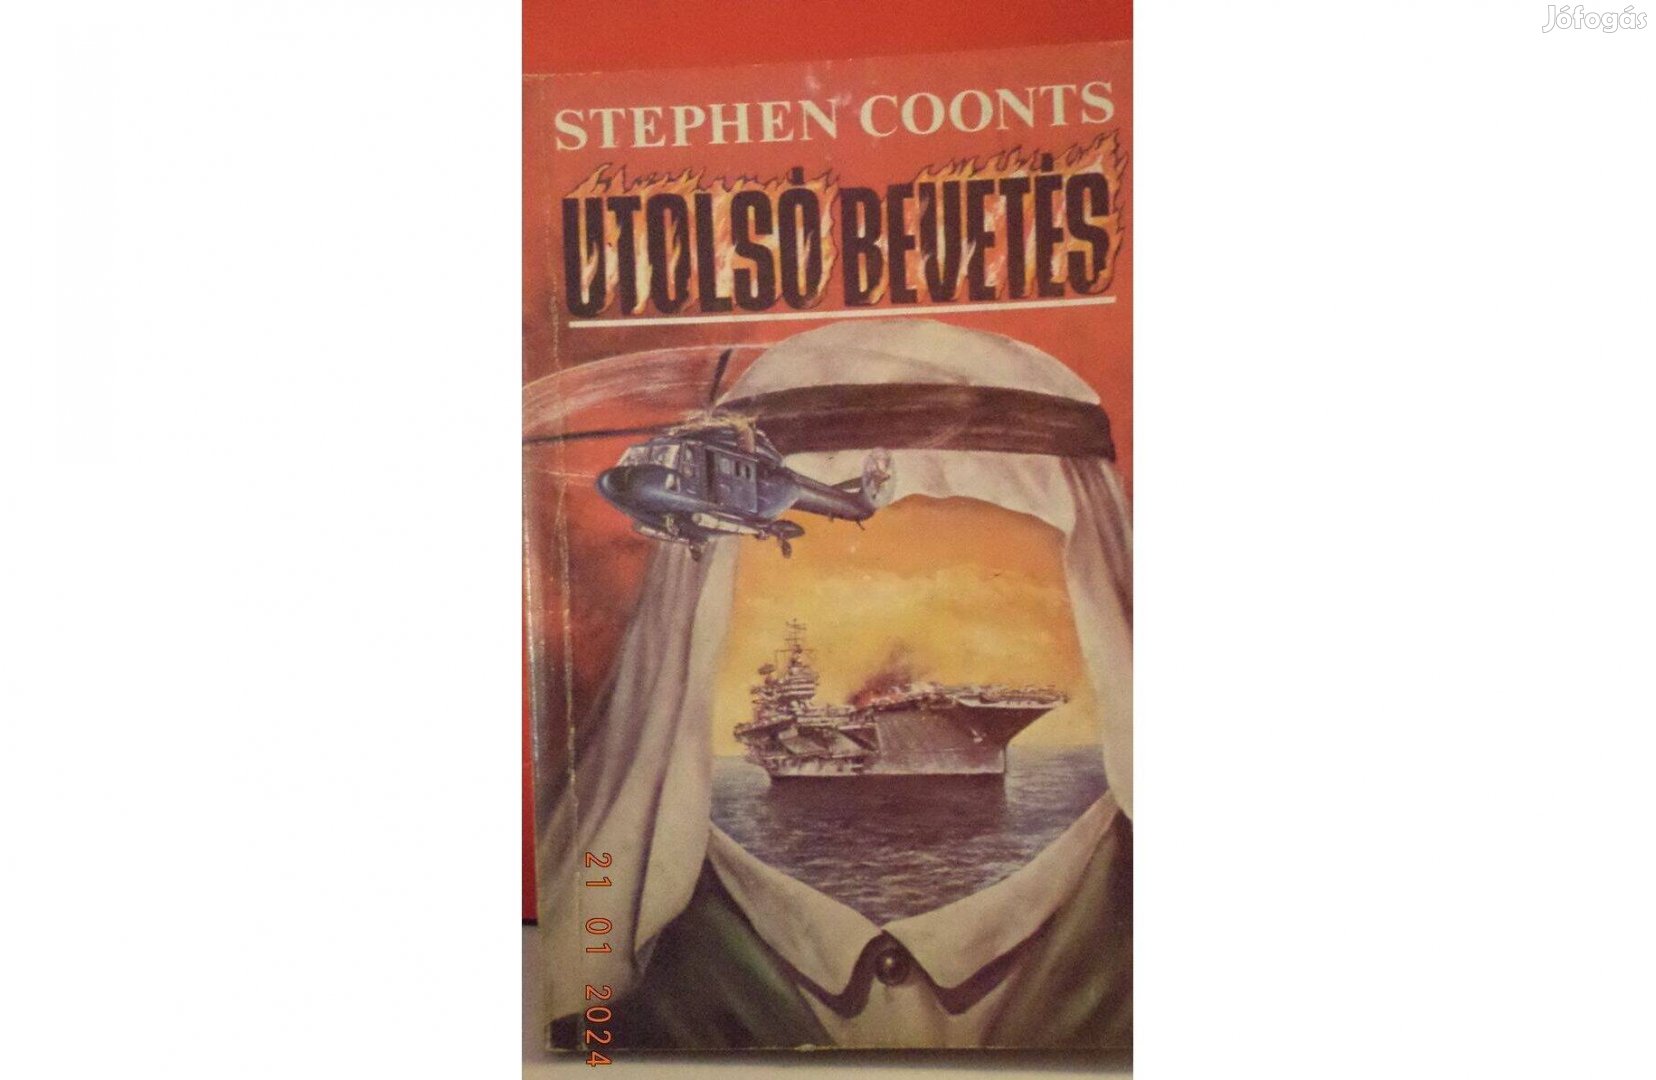 Stephen Coonts: Utolsó bevetés